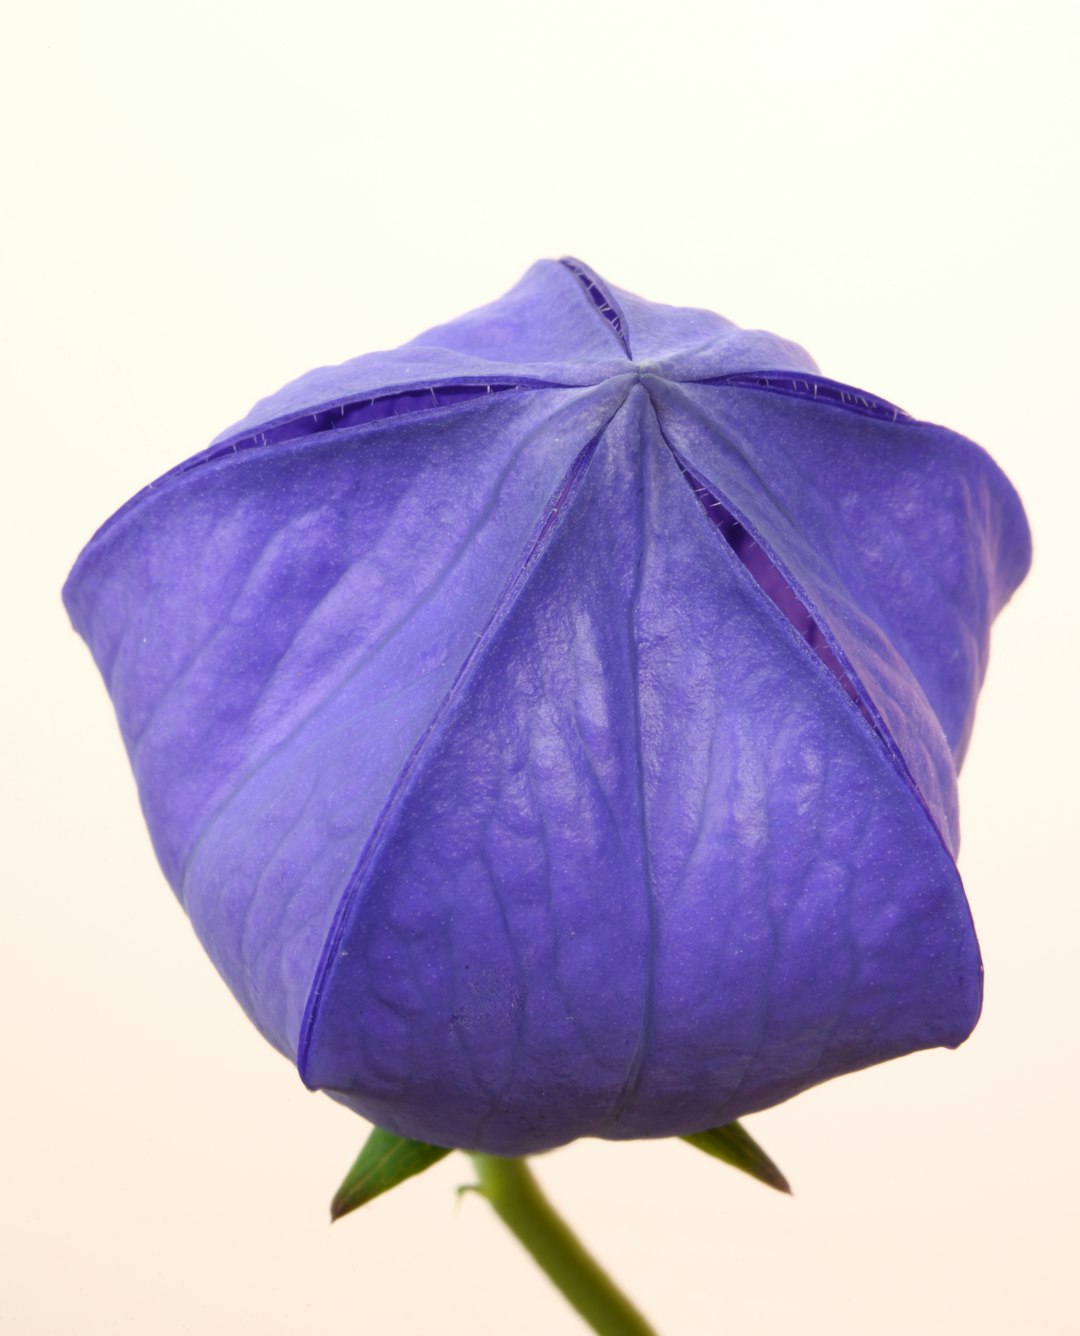 purple flower in white background